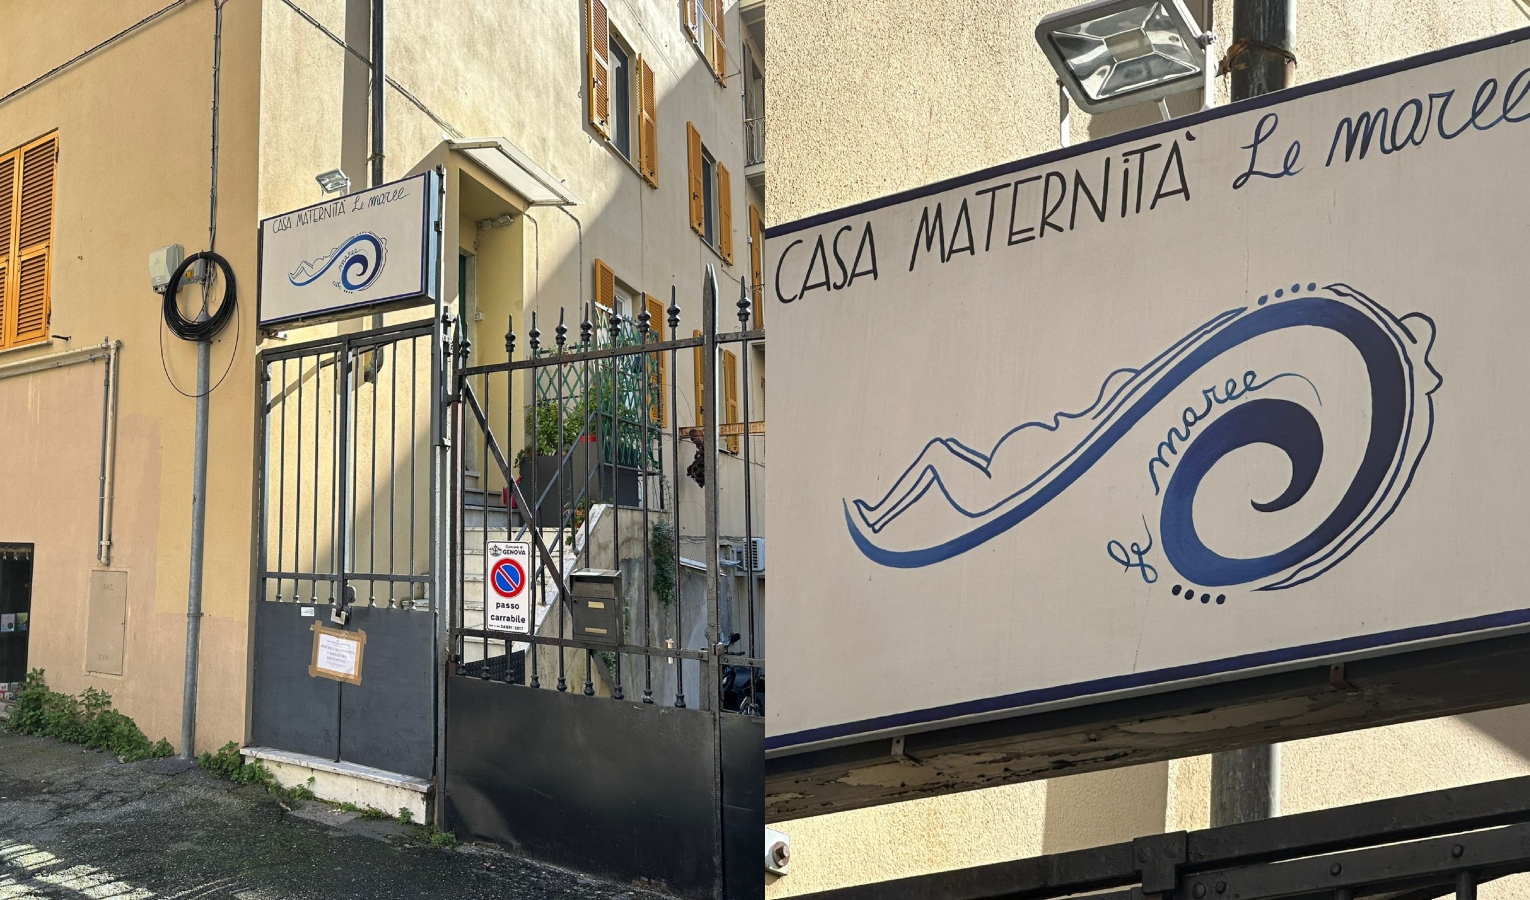 Genova, dissequestrata casa maternità Le Maree